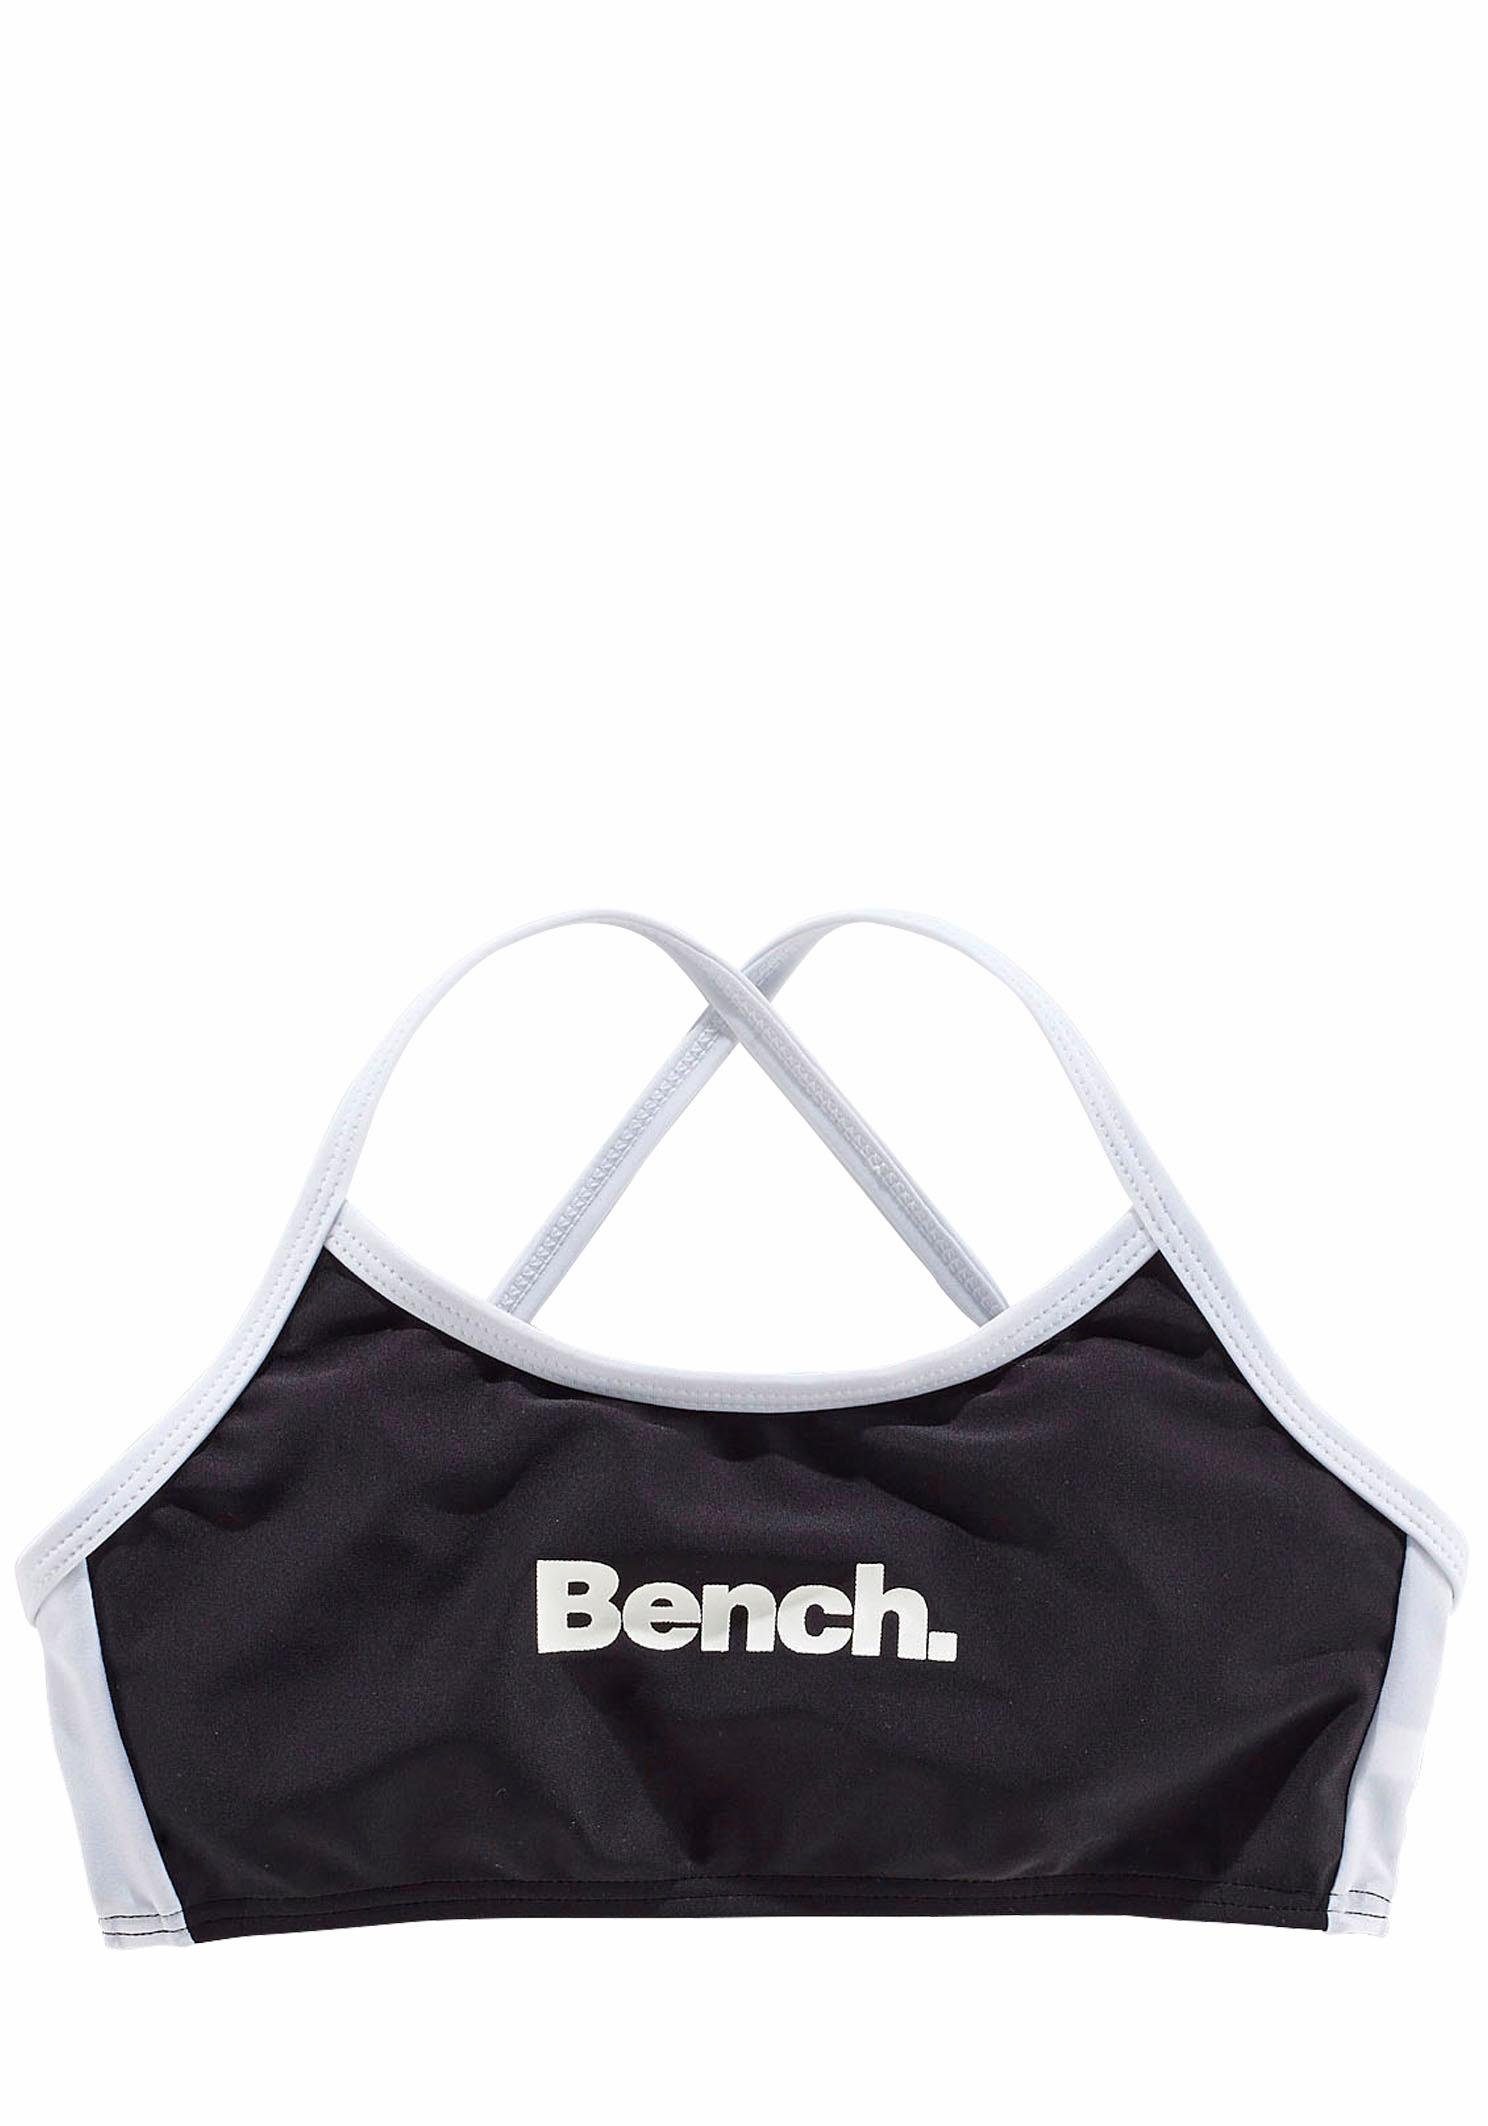 Bench. Bustier-Bikini Trägern mit schwarz-weiß gekreuzten